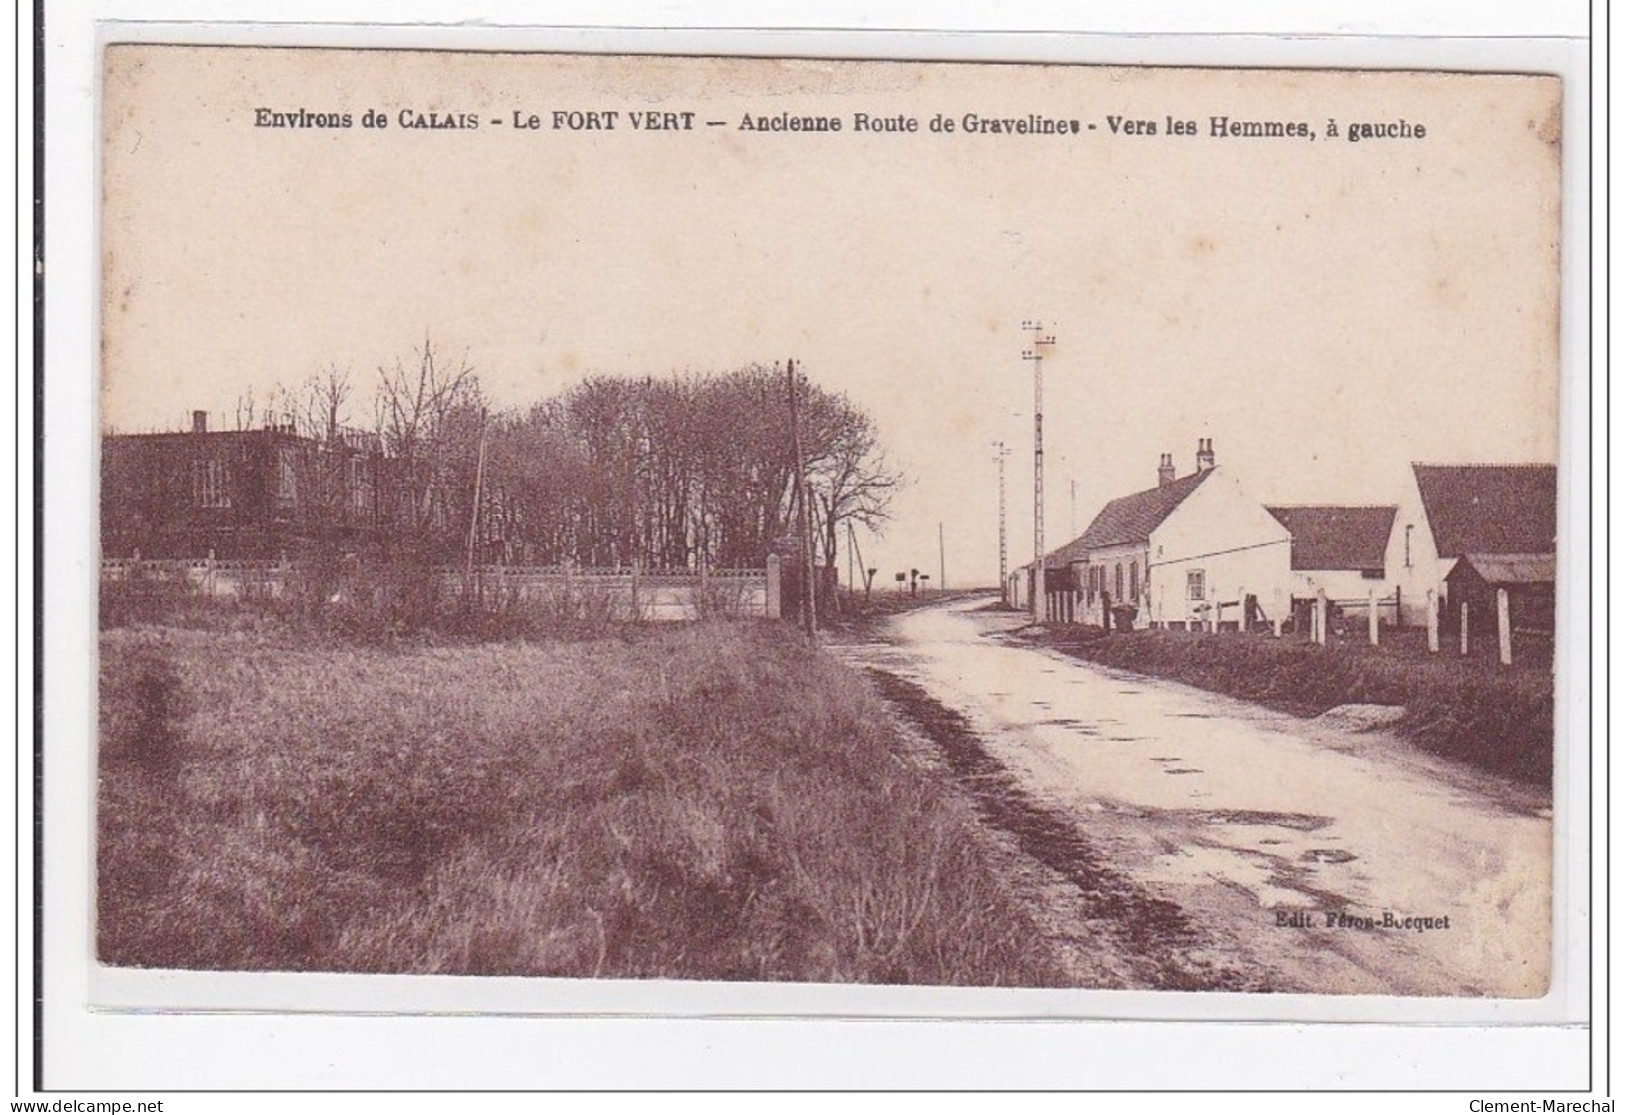 ENVIRONS DE CALAIS : Le Fort Vert, Ancienne Route De Gravelines, Vers Les Hommes, A Gauche - Tres Bon Etat - Fauquembergues